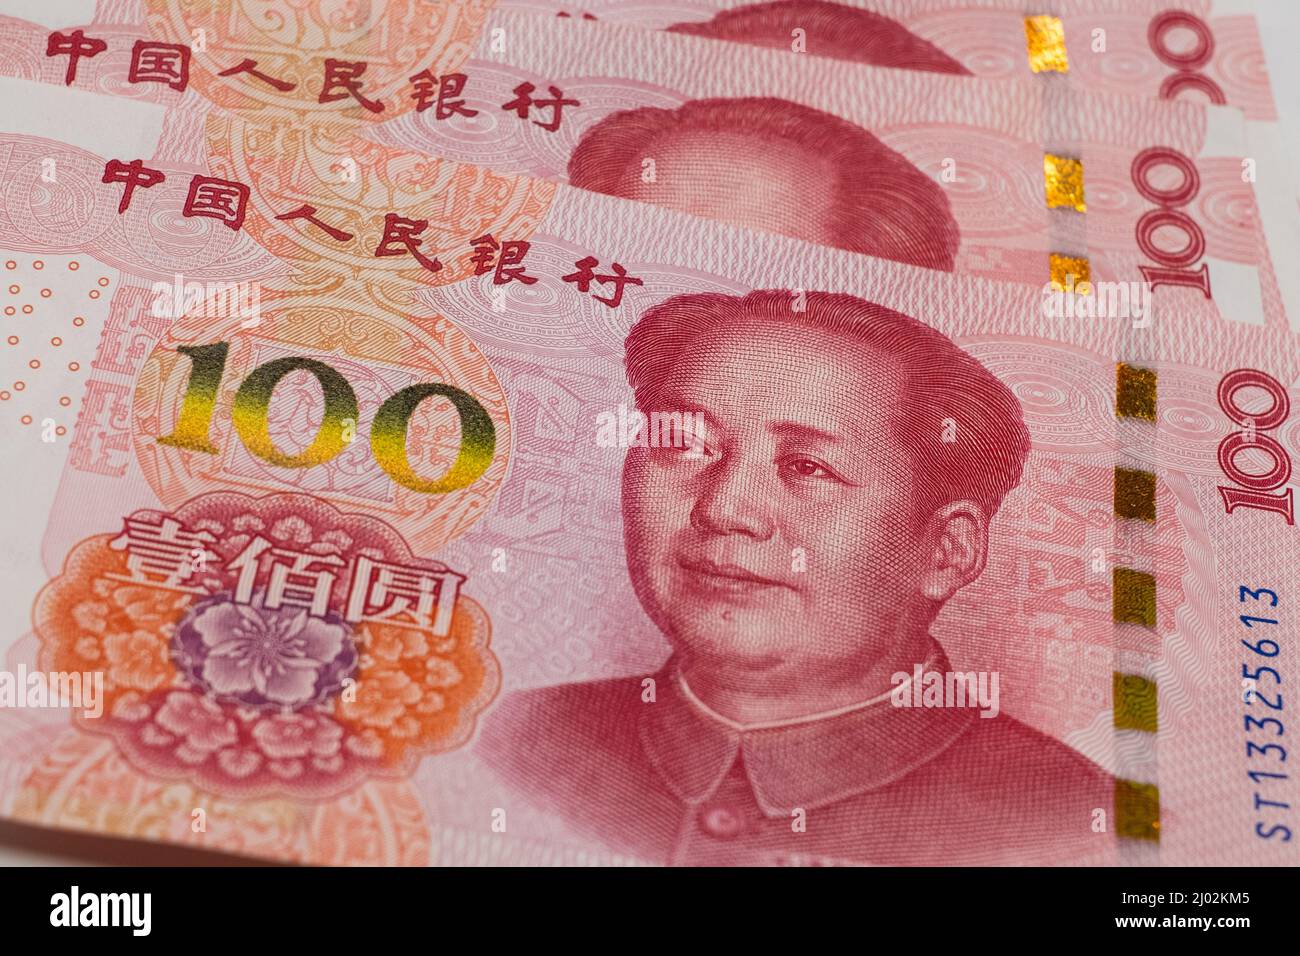 Billets en renminbi yuan chinois, monnaie papier, monnaie de la Banque de Chine. Le système financier chinois. Concept de revenu et de paiements Banque D'Images